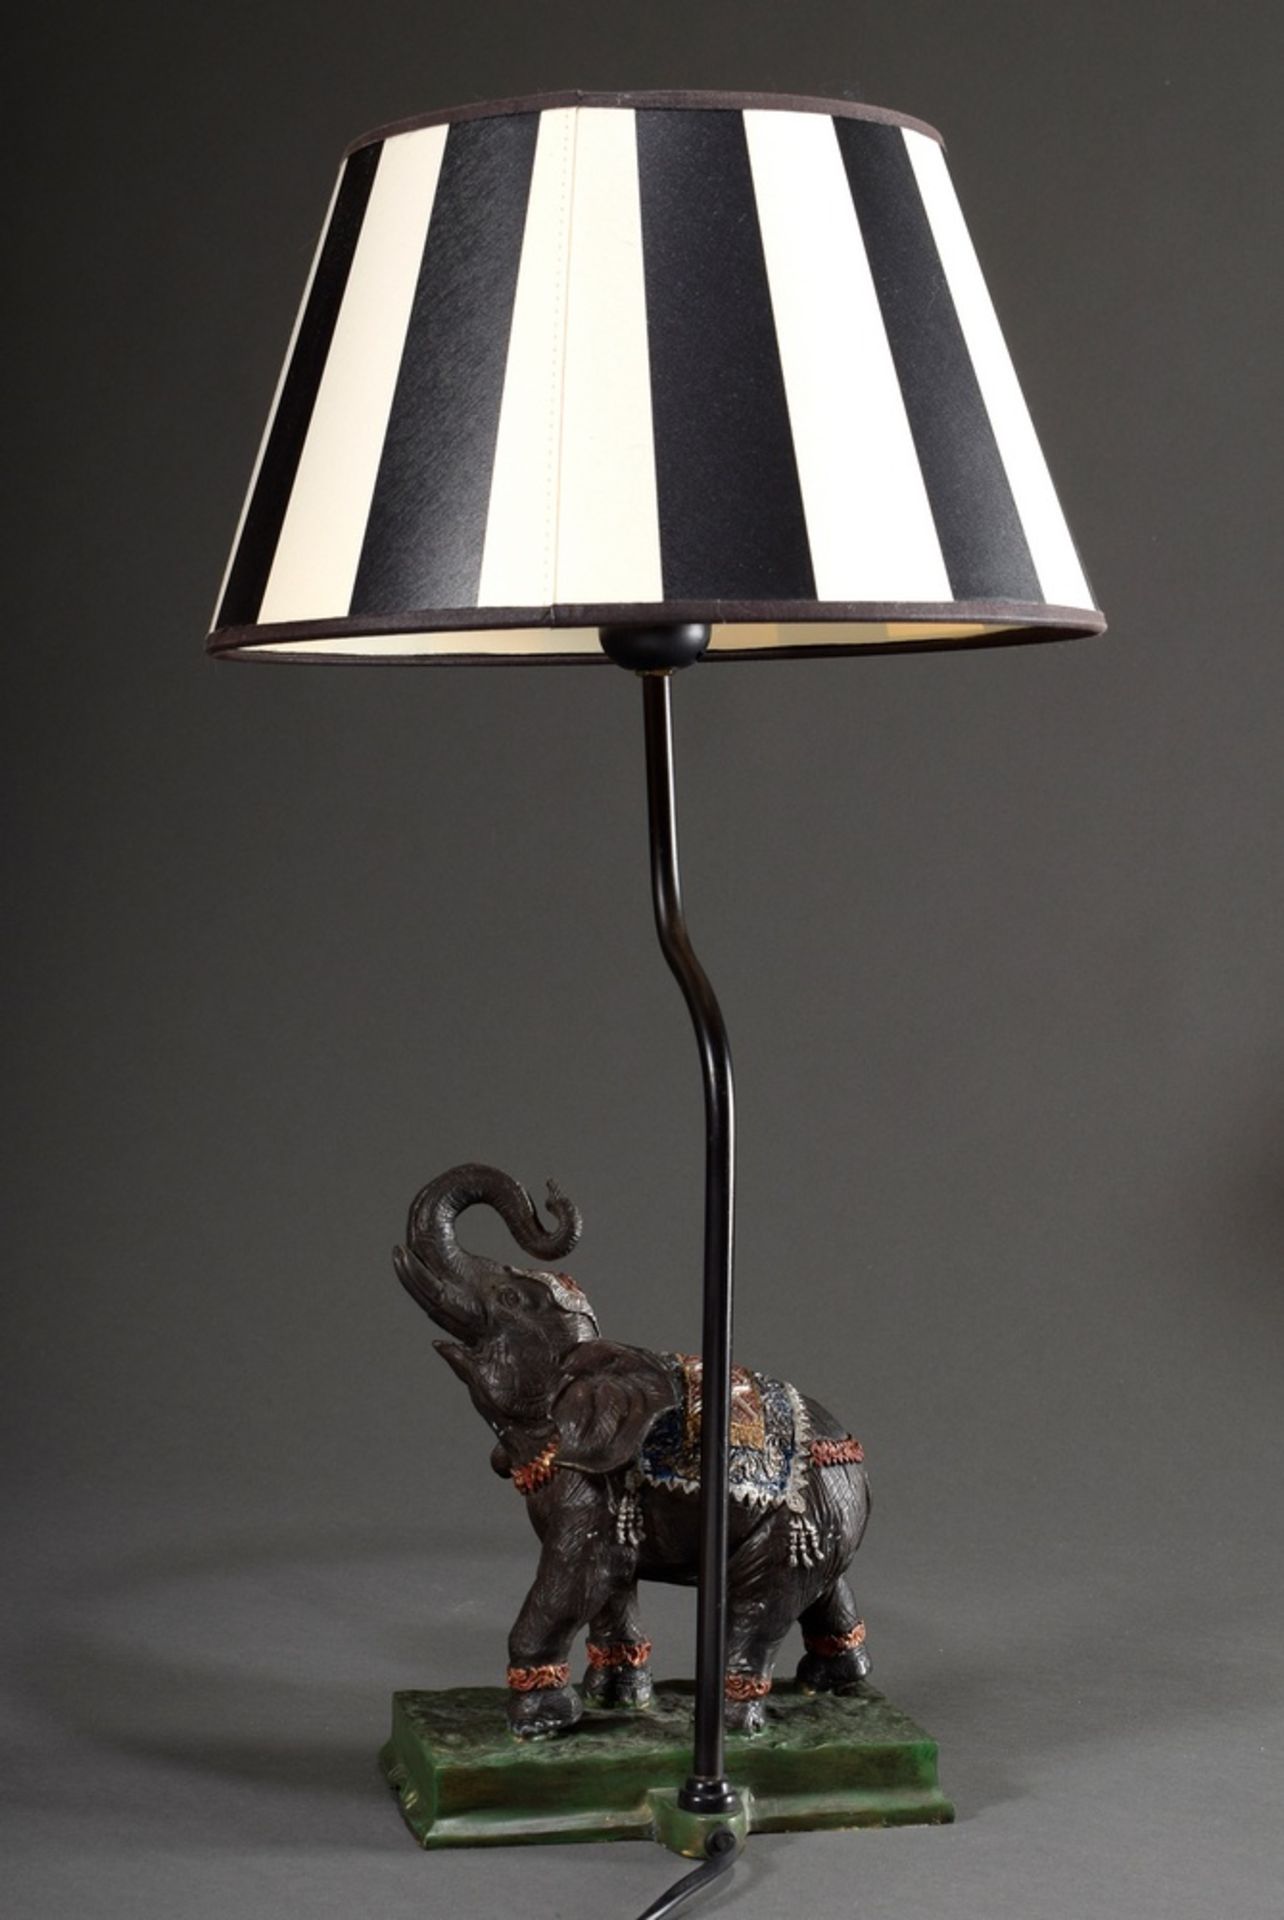 Moderne Tischlampe "Elefant", farbig bemaltes Metall, schwarz-weiß gestreifter Schirm, H. 54,5cm - Bild 2 aus 7